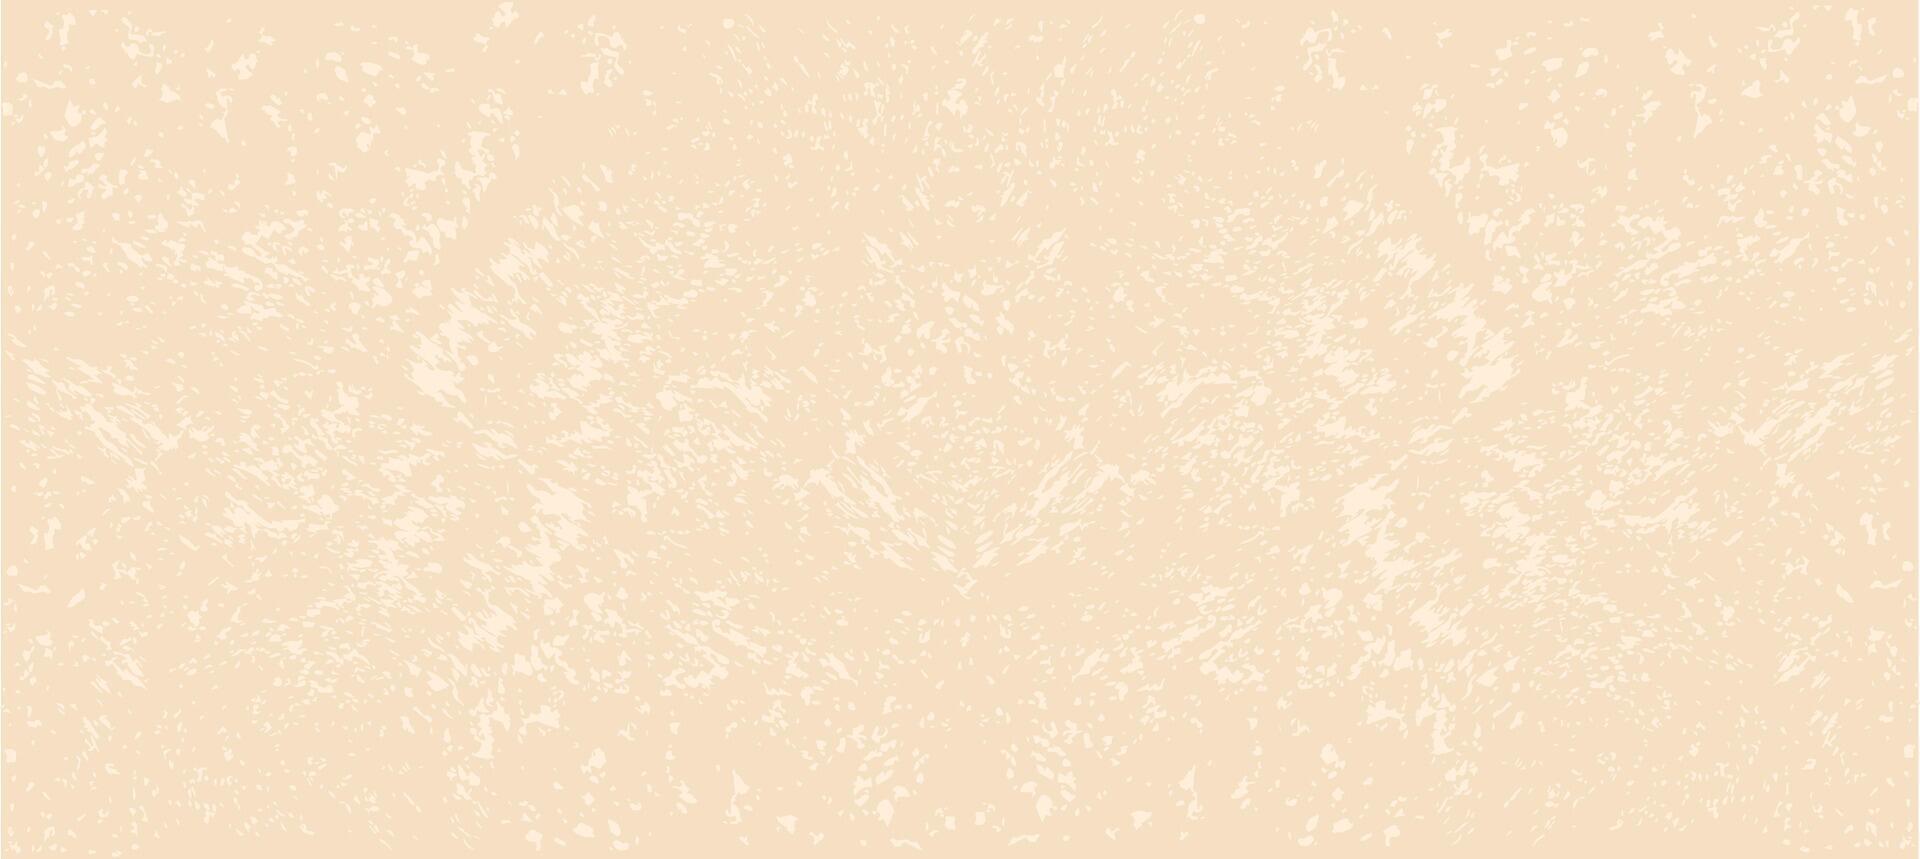 ris papper. vektor stock illustration. årgång grunge bakgrund med prickar och fläckar. minimalistisk kornig äggskal papper textur.